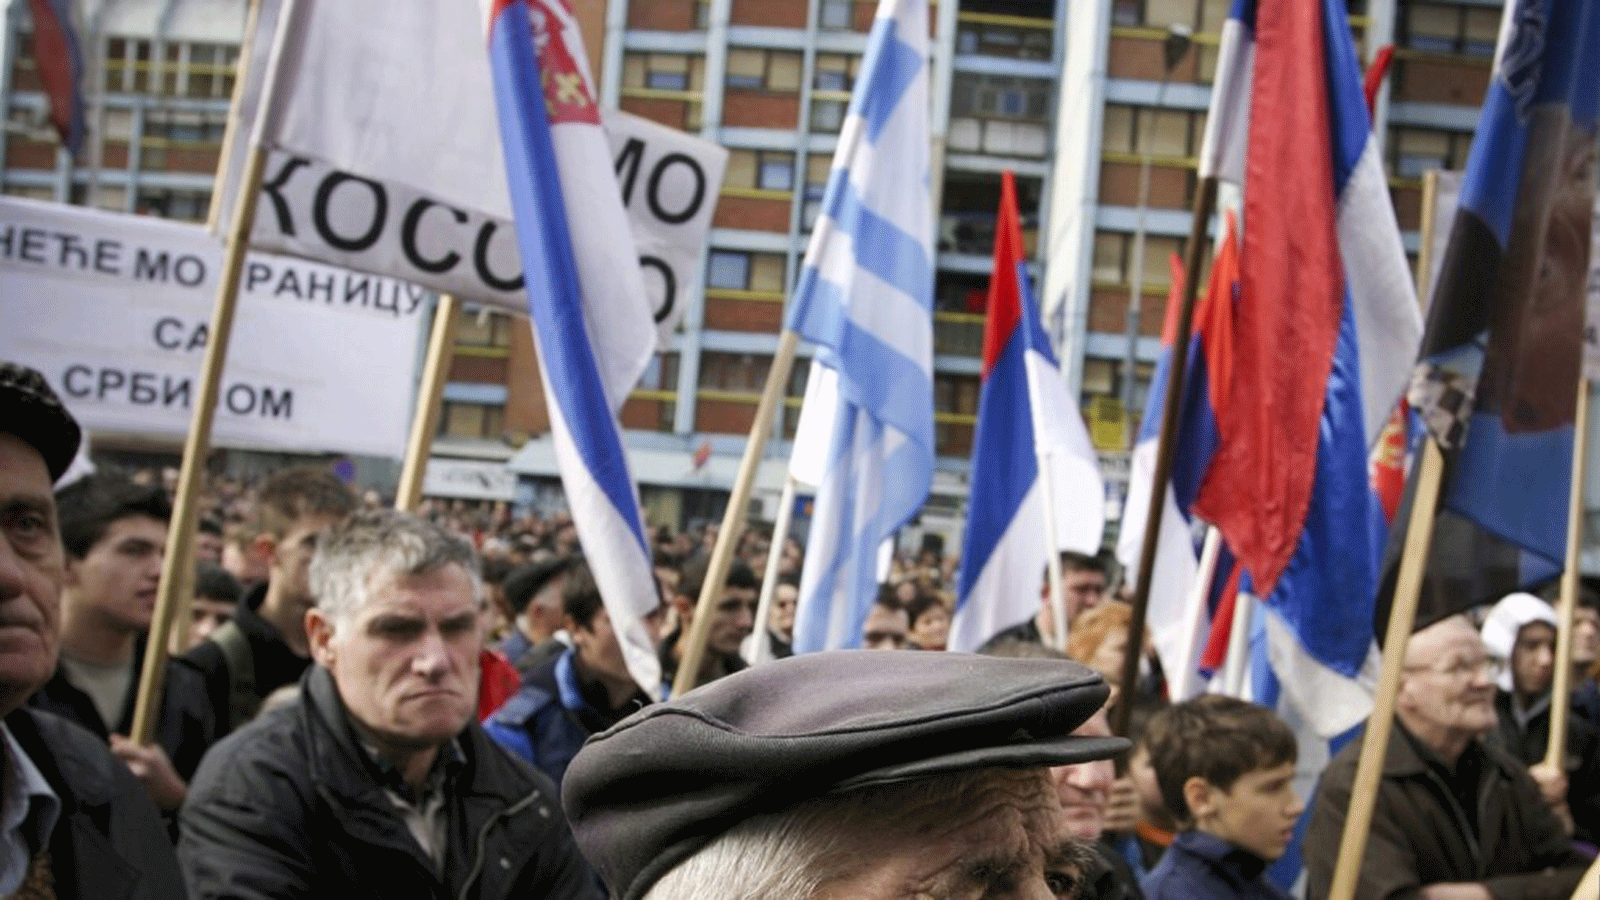 صربيو كوسوفو في شوارع ميتروفيتشا بتاريخ 10 شباط / فبراير، احتجاجاً على قوات أمن كوسوفو ذات الأصل الألباني التي تم إطلاقها حديثًا.